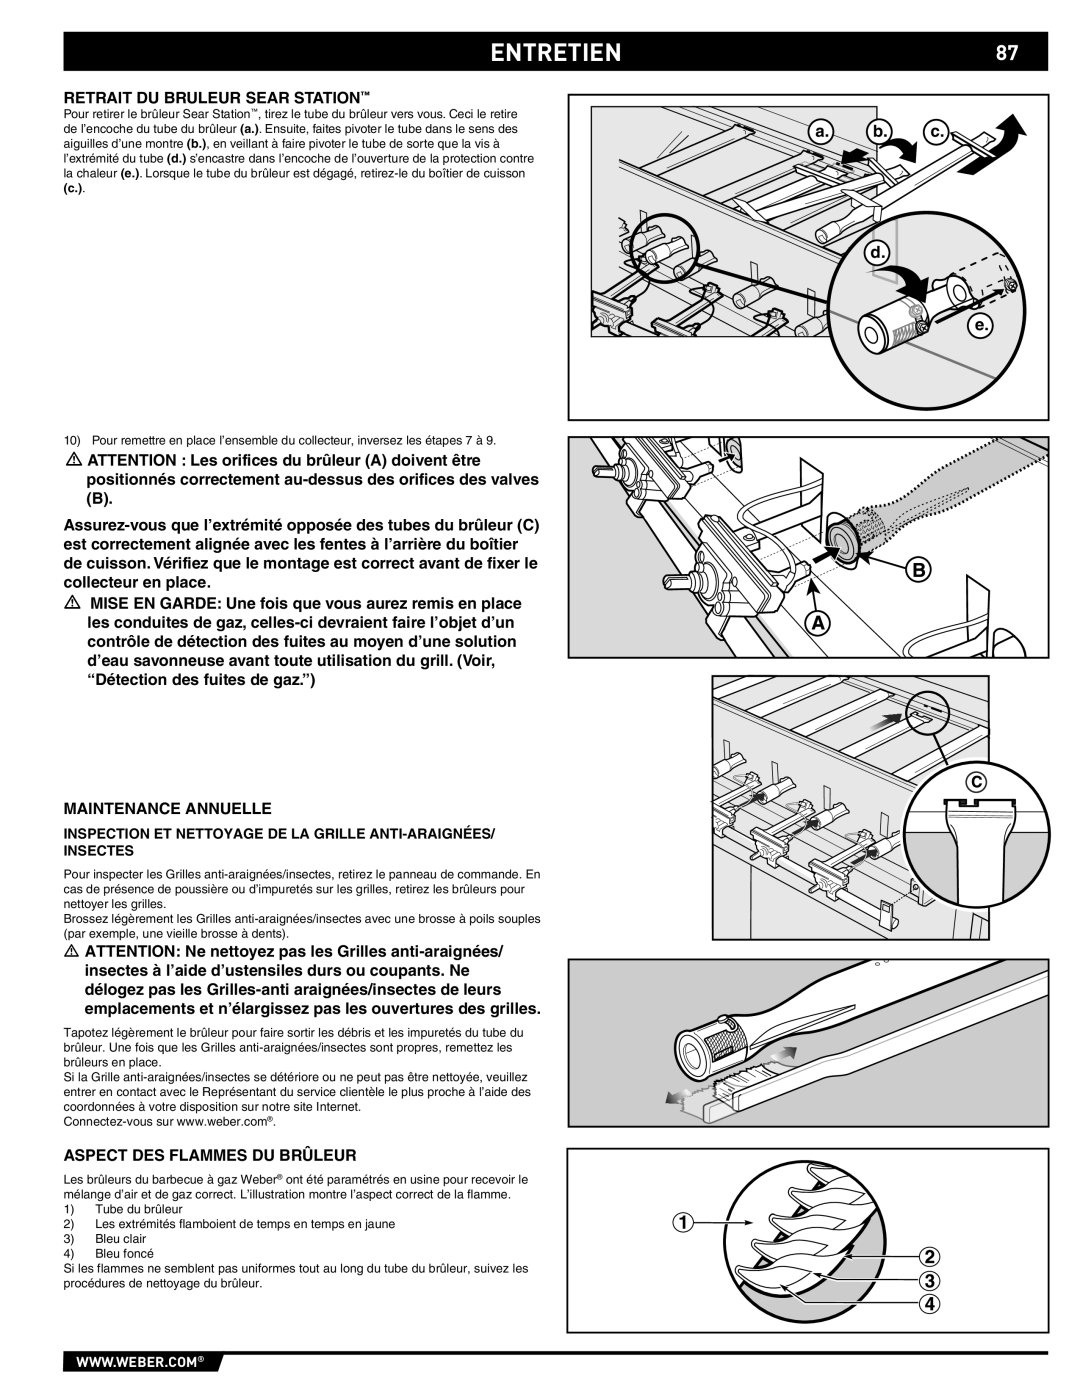 Summit 89190 manual Entretien, a. b. c d e, Inspection Et Nettoyage De La Grille Anti-Araignées Insectes 